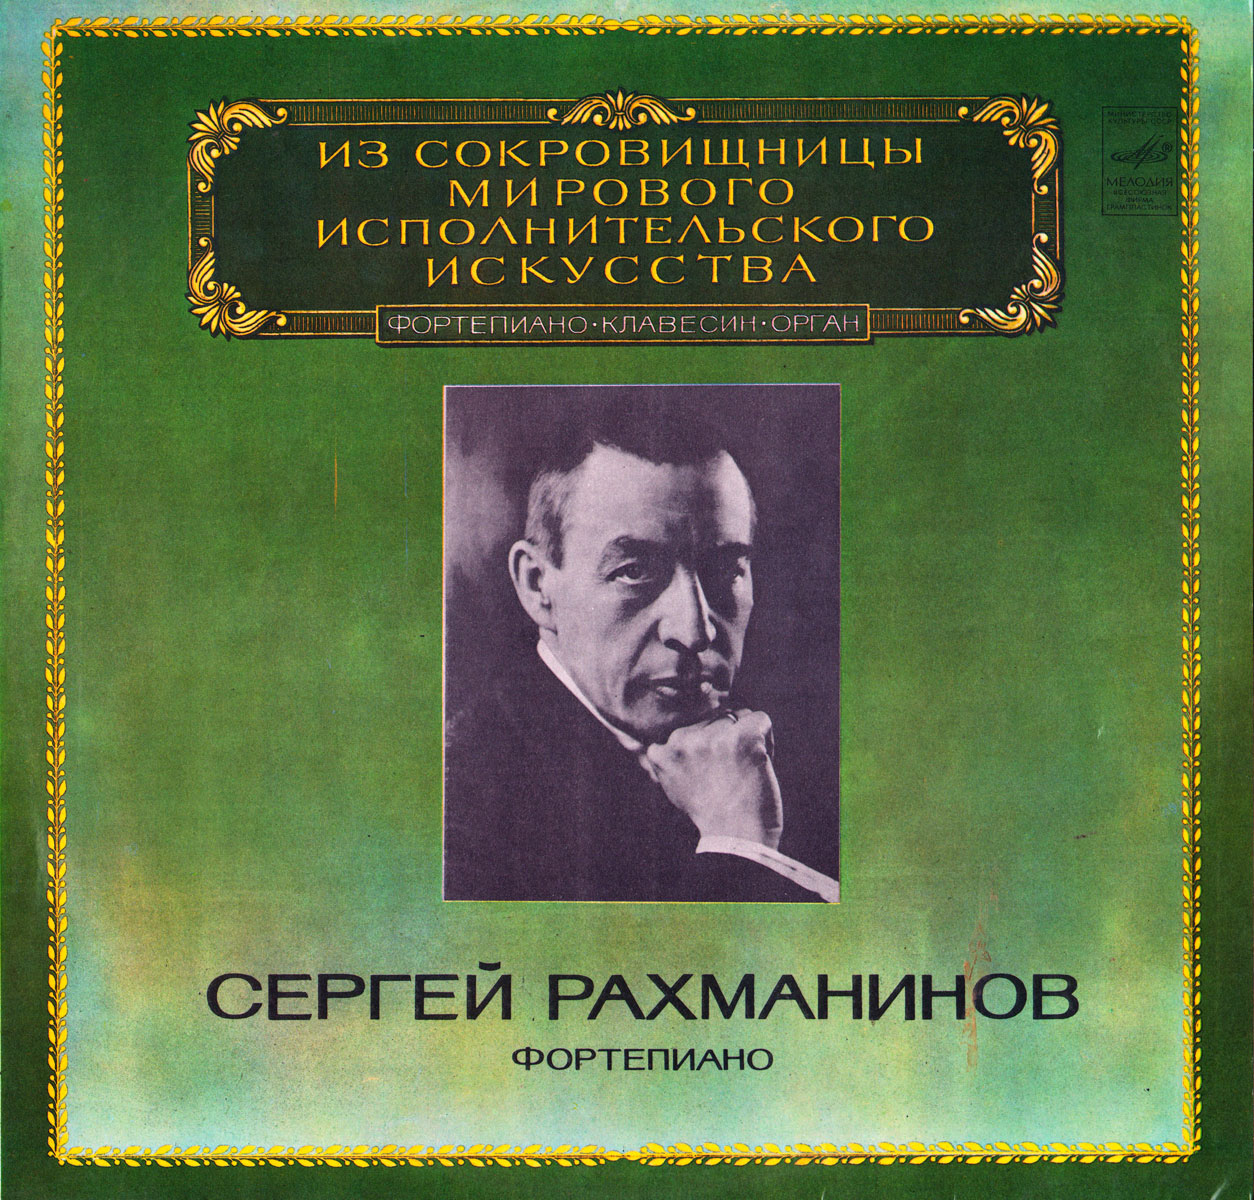 Сергей Рахманинов (1873-1943). Фортепиано